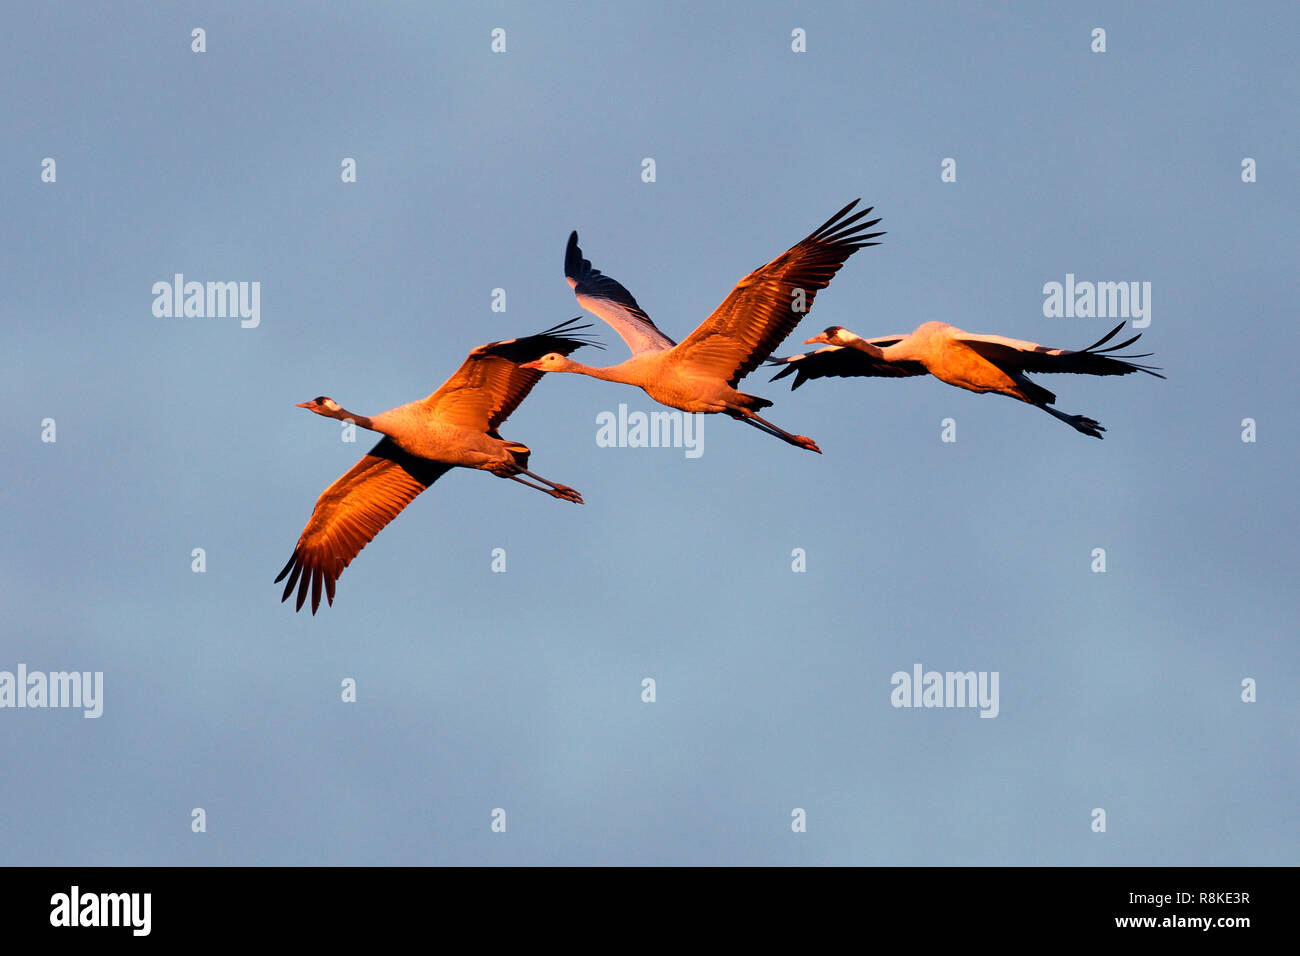 common crane, (Grus grus), wildlife, Nationalpark Vorpommersche Boddenlandschaft, Mecklenburg-Vorpommern, Germany Stock Photo